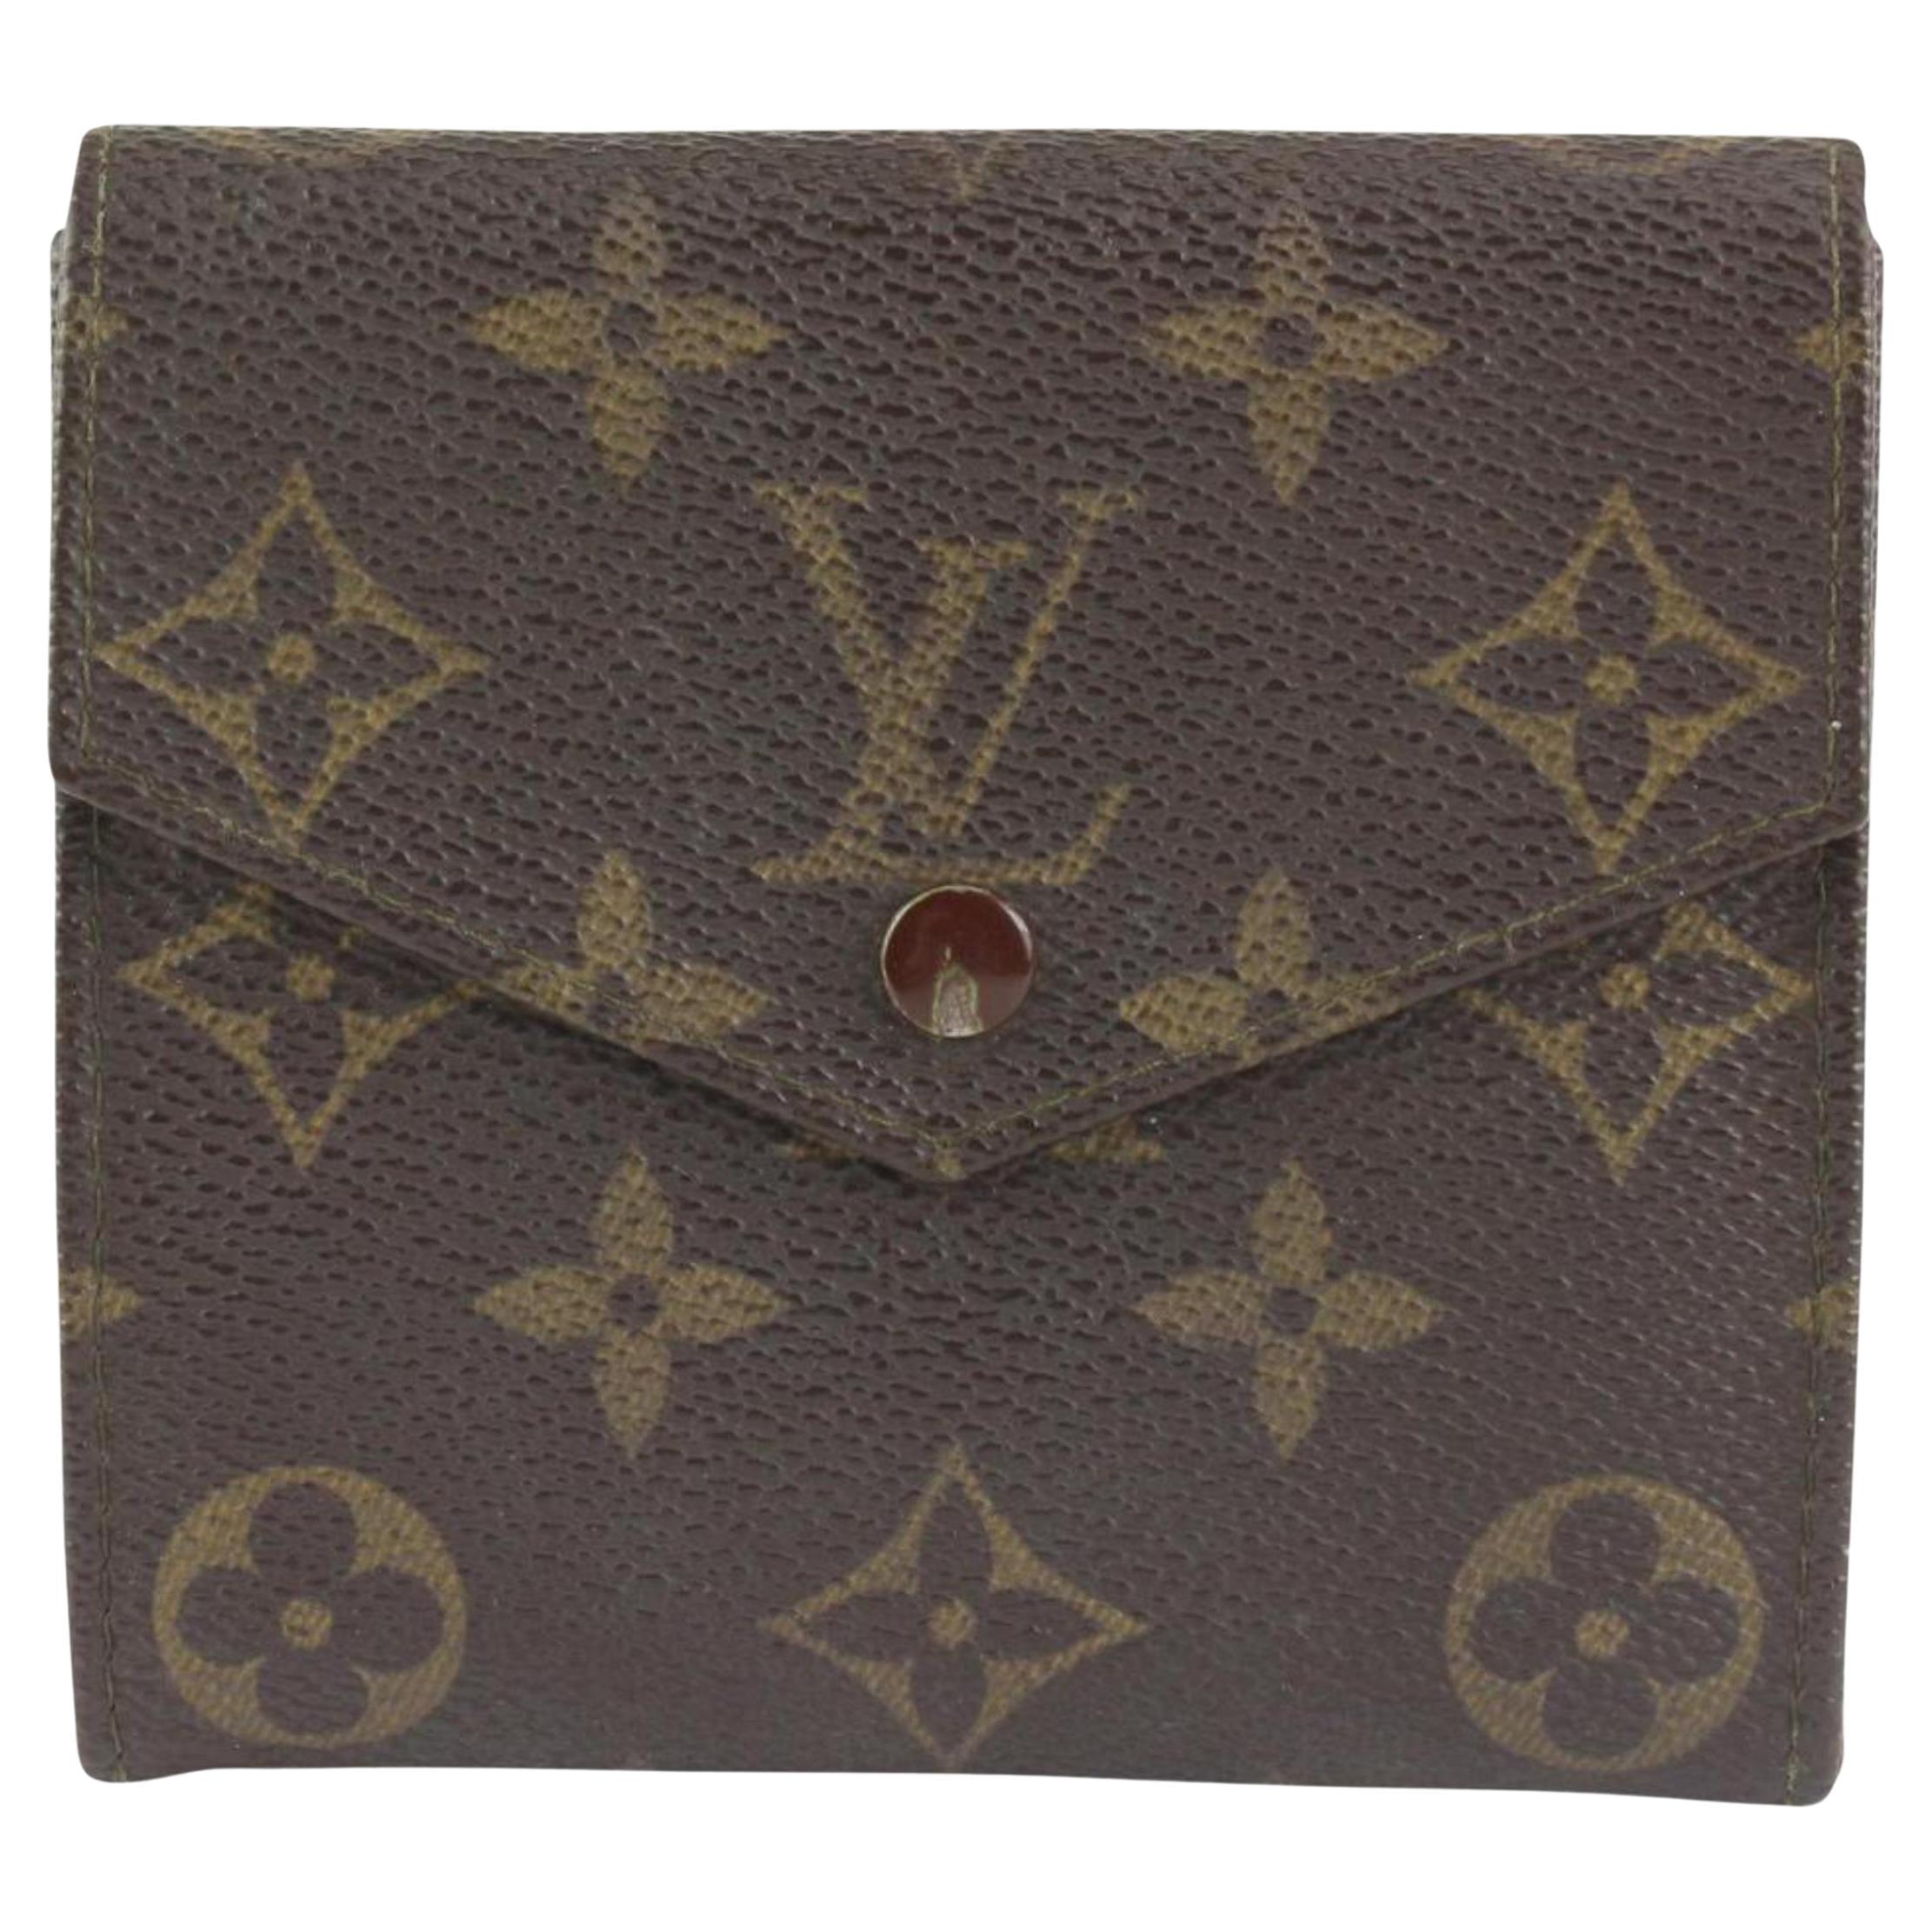 Louis Vuitton Monogram Elise Compact Wallet 1217lv21 For Sale